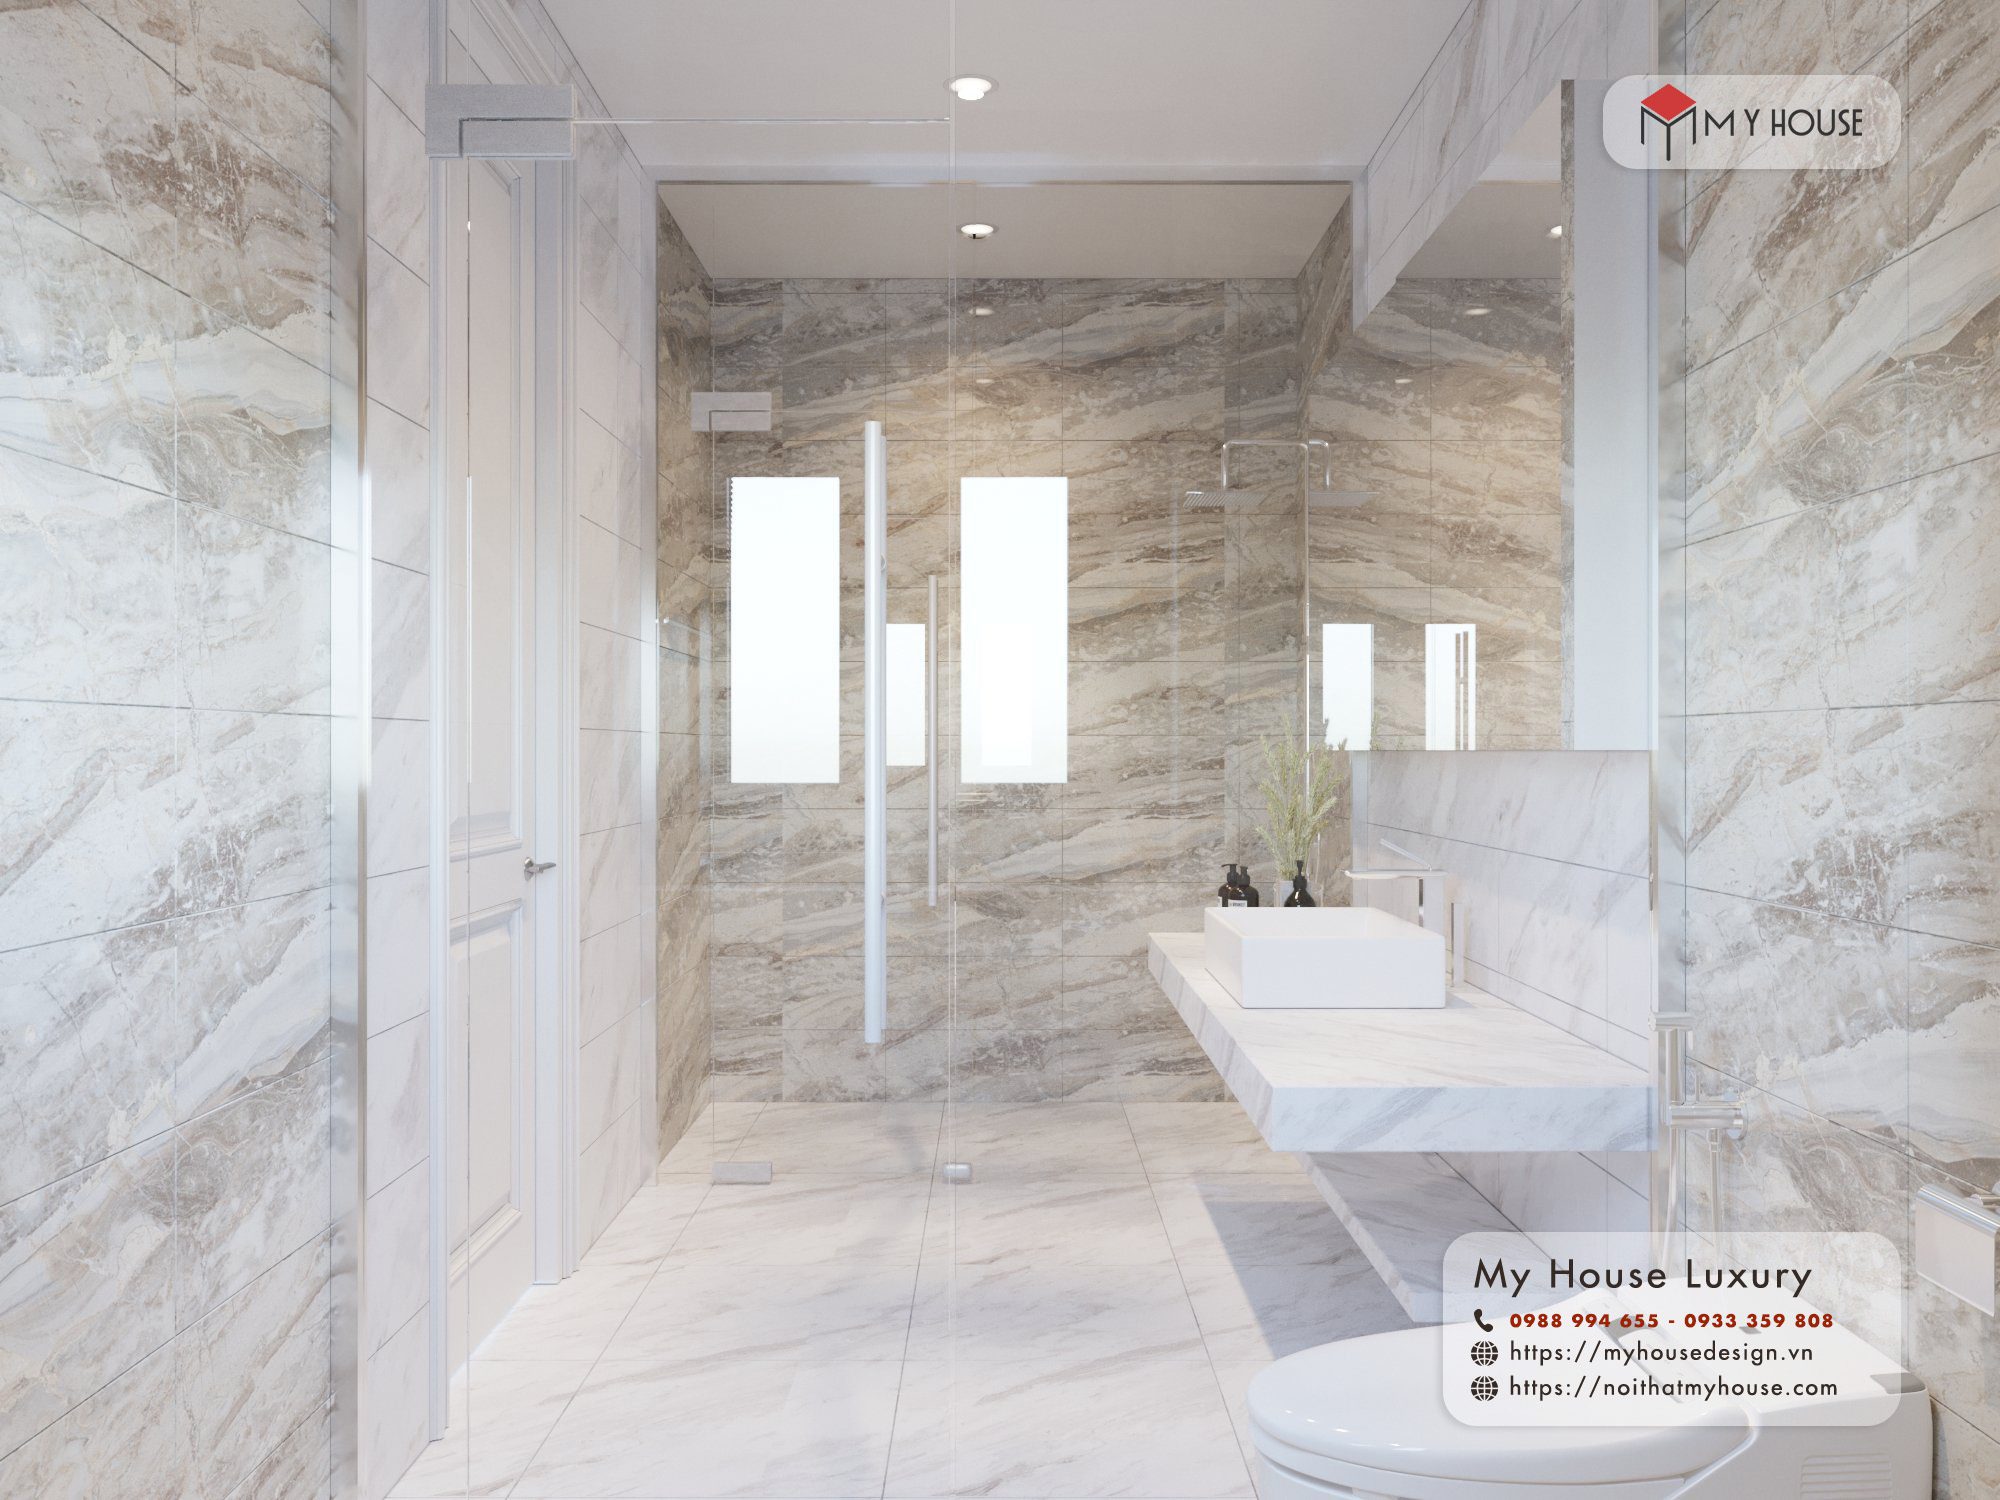 Sử dụng các loại đá tự nhiên cao cấp trong thiết kế phòng tắm